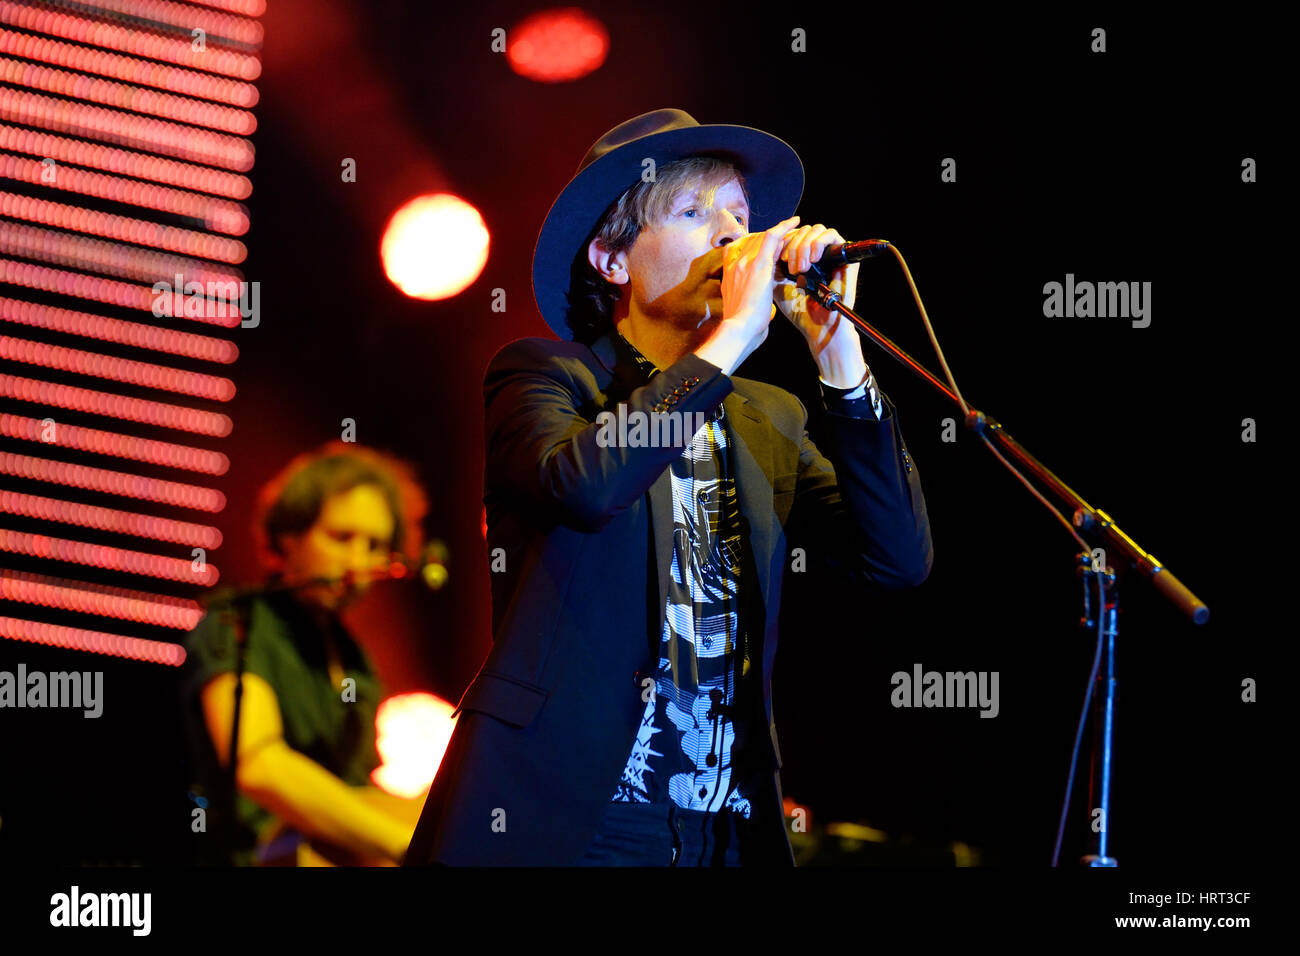 MADRID - SEP 13: Beck (legendary musician, singer and songwriter) performance at Dcode Festival on September 13, 2014 in Madrid, Spain. Stock Photo